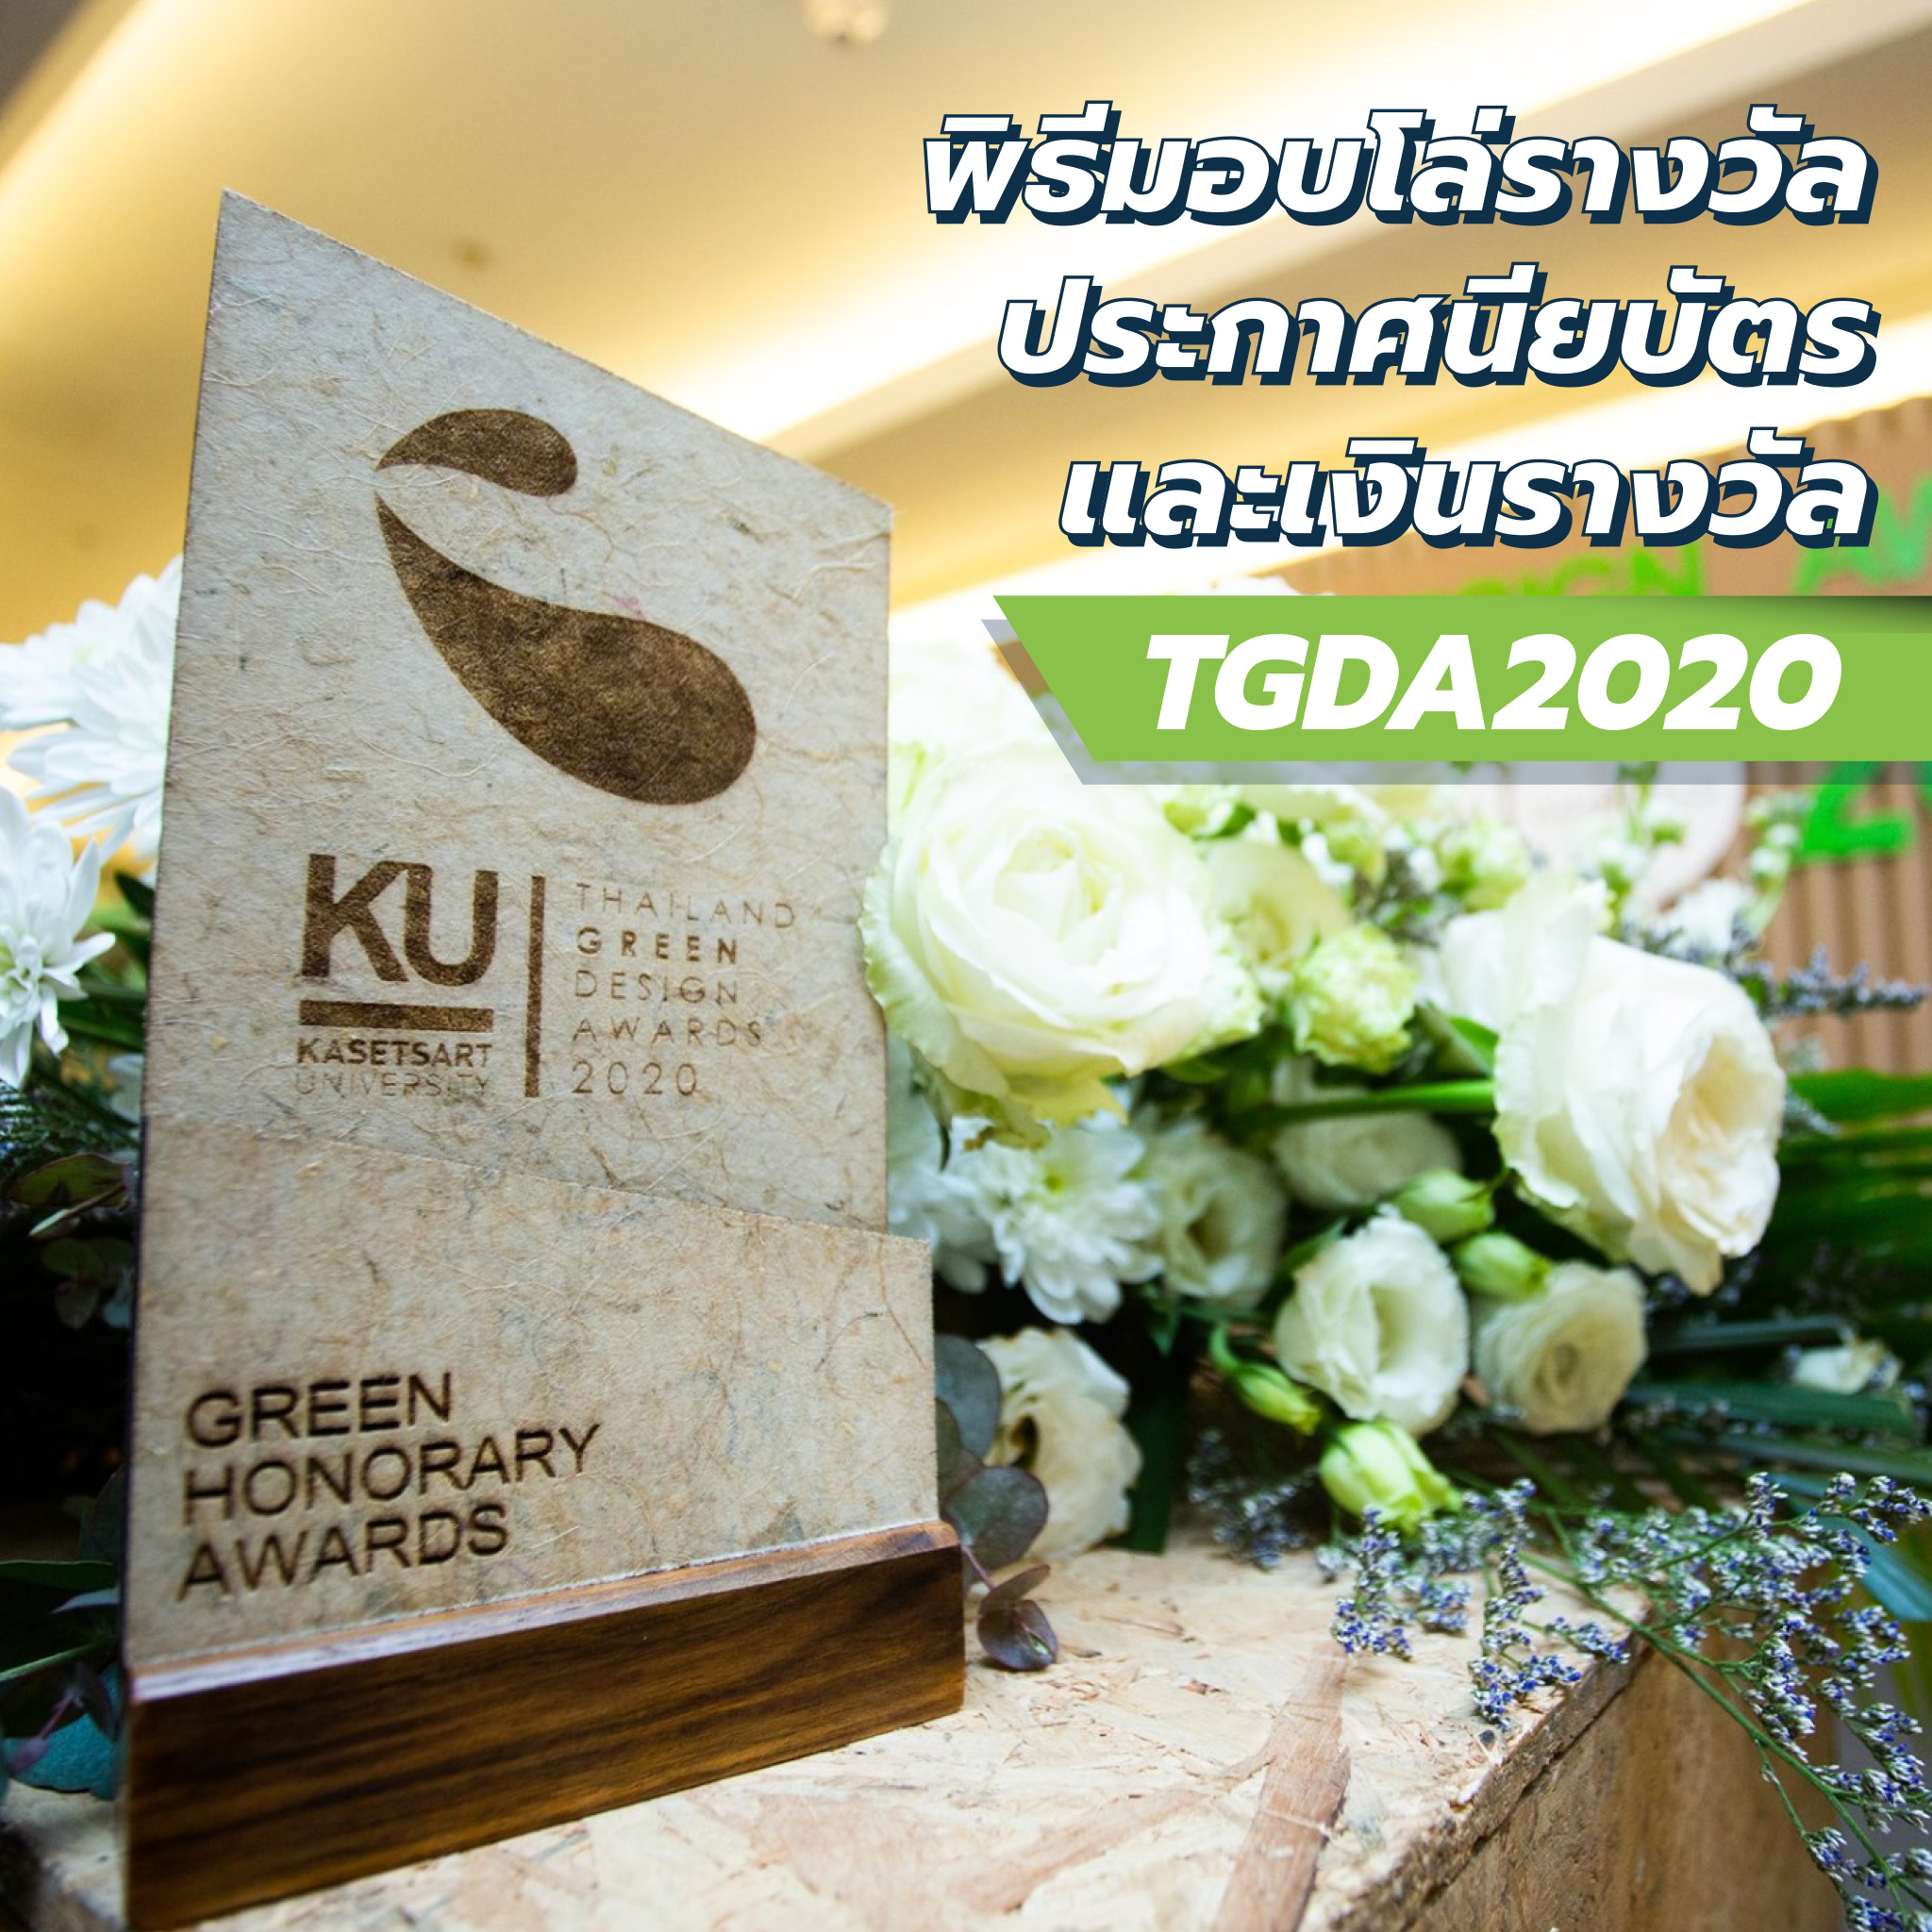 พิธีมอบโล่รางวัล ประกาศนียบัตร และเงินรางวัล ของการประกวดผลิตภัณฑ์ที่เป็นมิตรต่อสิ่งแวดล้อม TGDA2020